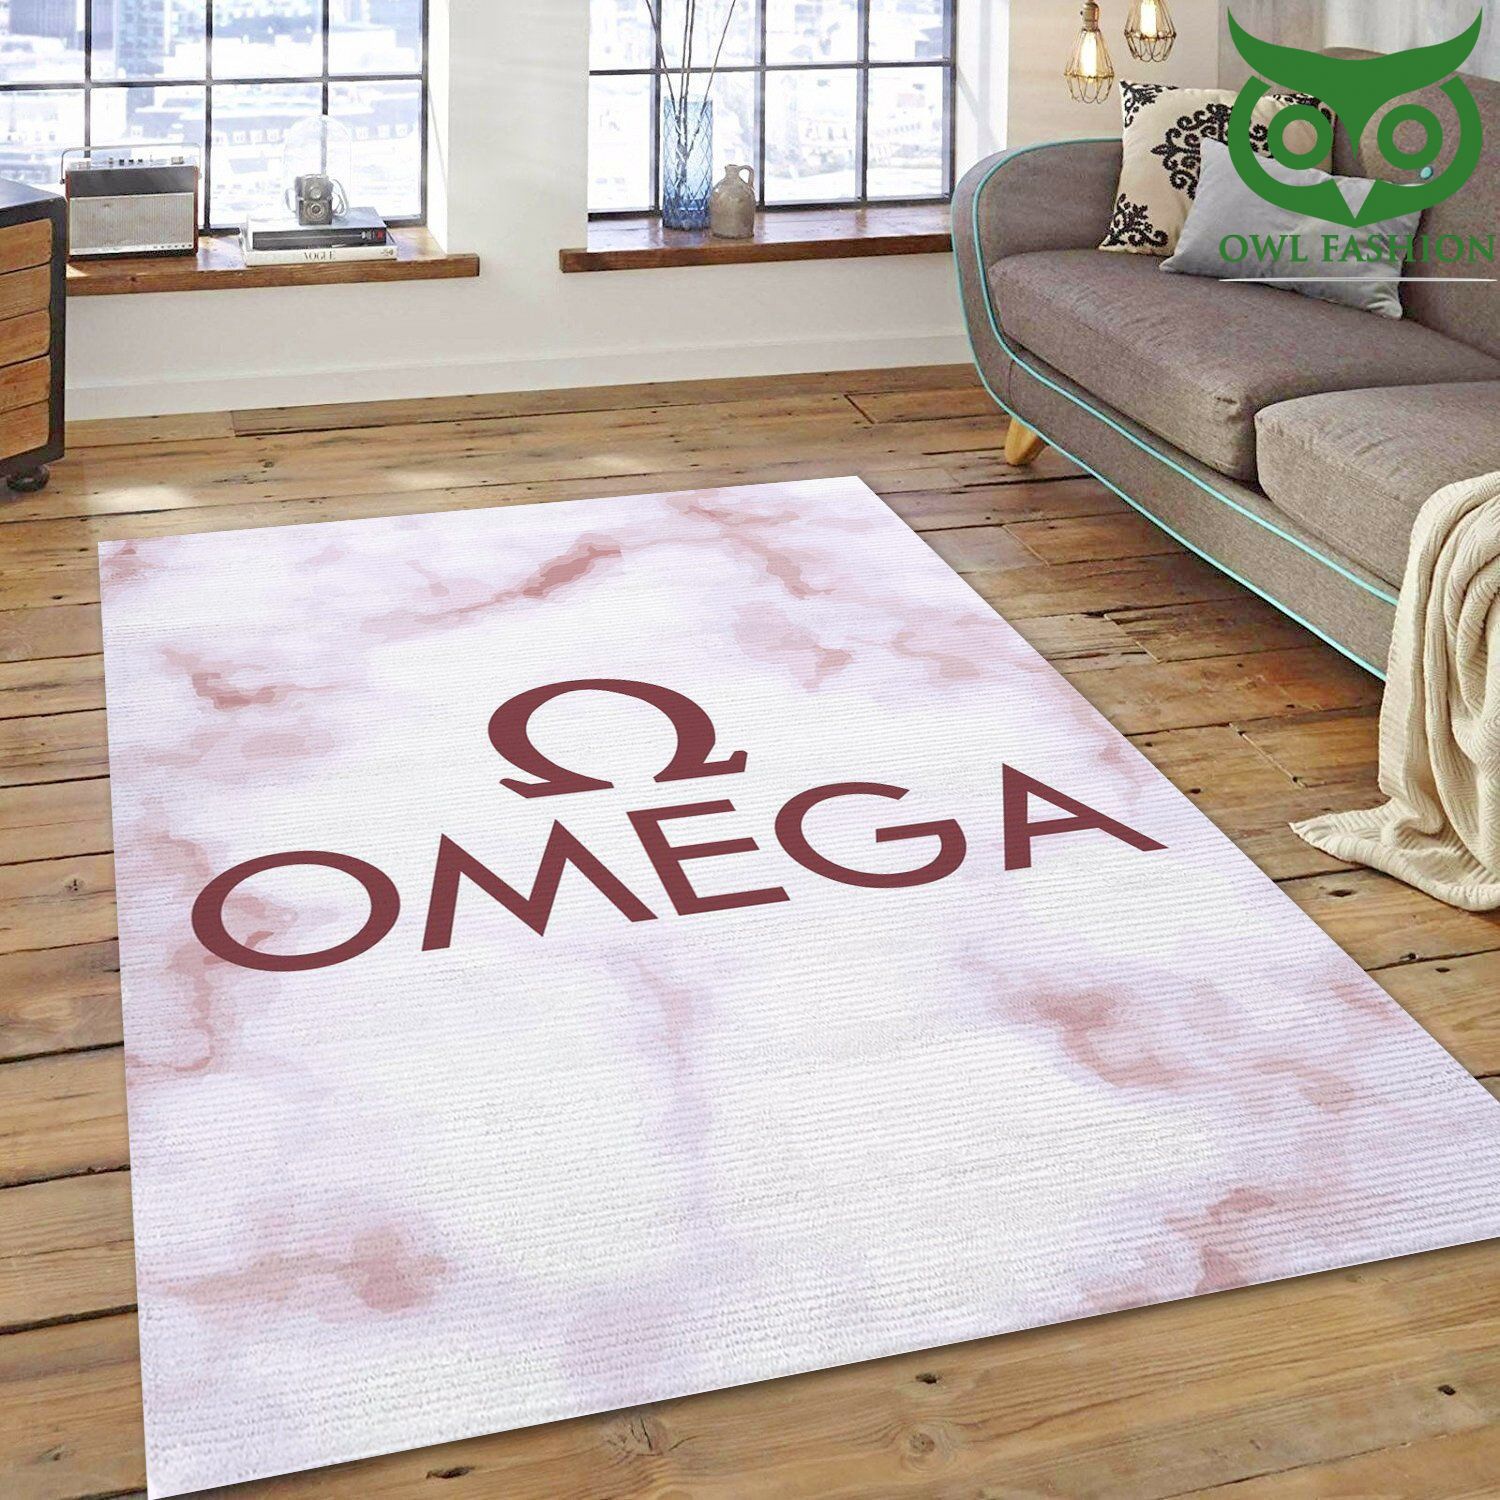 Omega room decorate floor carpet rug US style